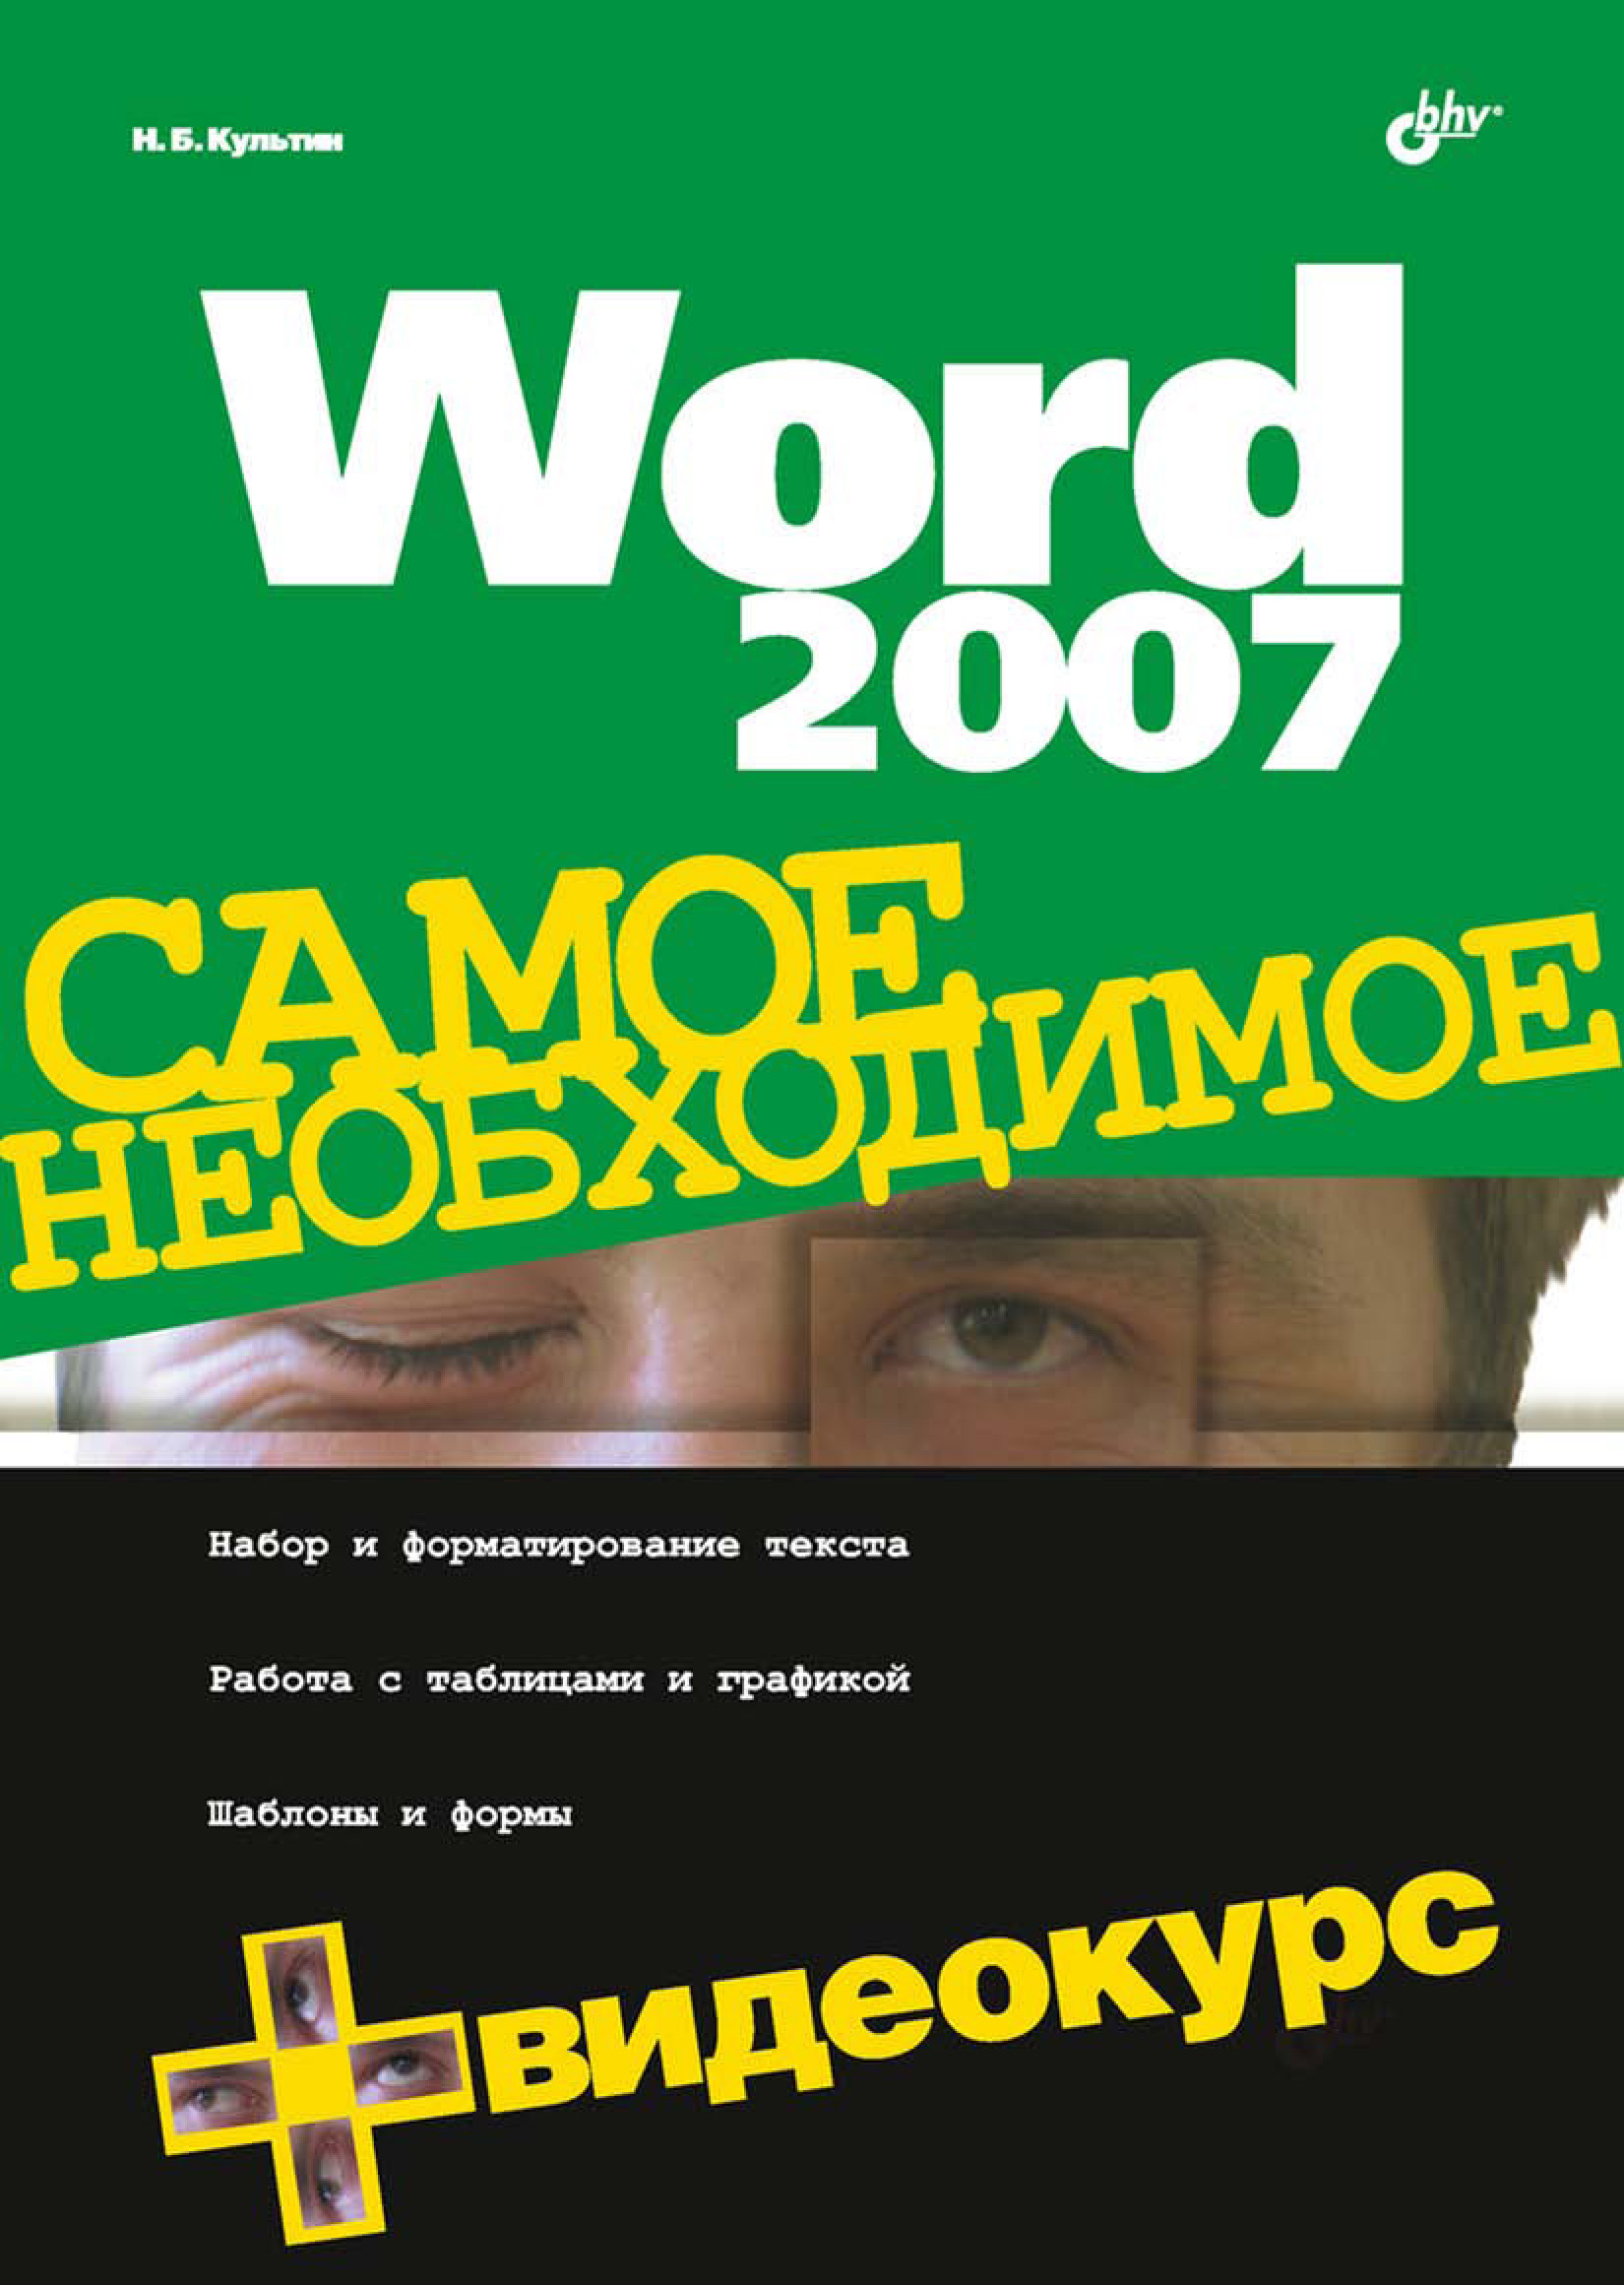 Книга Самое необходимое (BHV) Word 2007 созданная Никита Культин может относится к жанру программы, руководства. Стоимость электронной книги Word 2007 с идентификатором 6991176 составляет 95.00 руб.